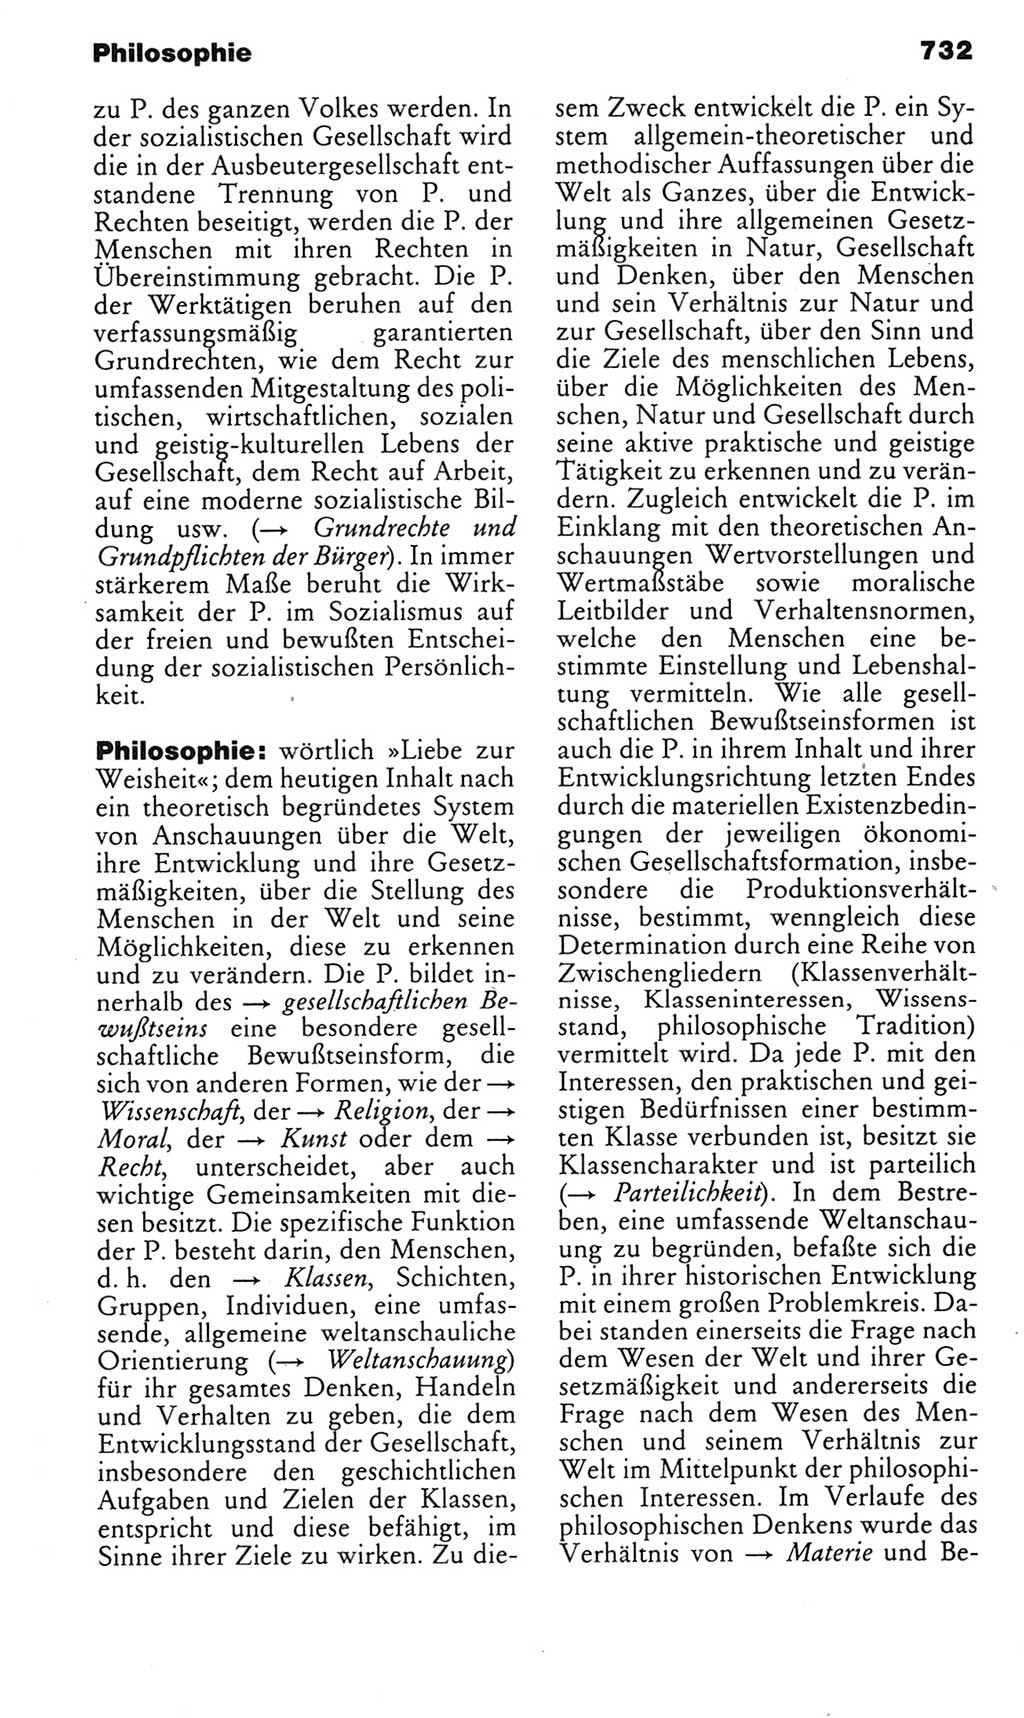 Kleines politisches Wörterbuch [Deutsche Demokratische Republik (DDR)] 1985, Seite 732 (Kl. pol. Wb. DDR 1985, S. 732)